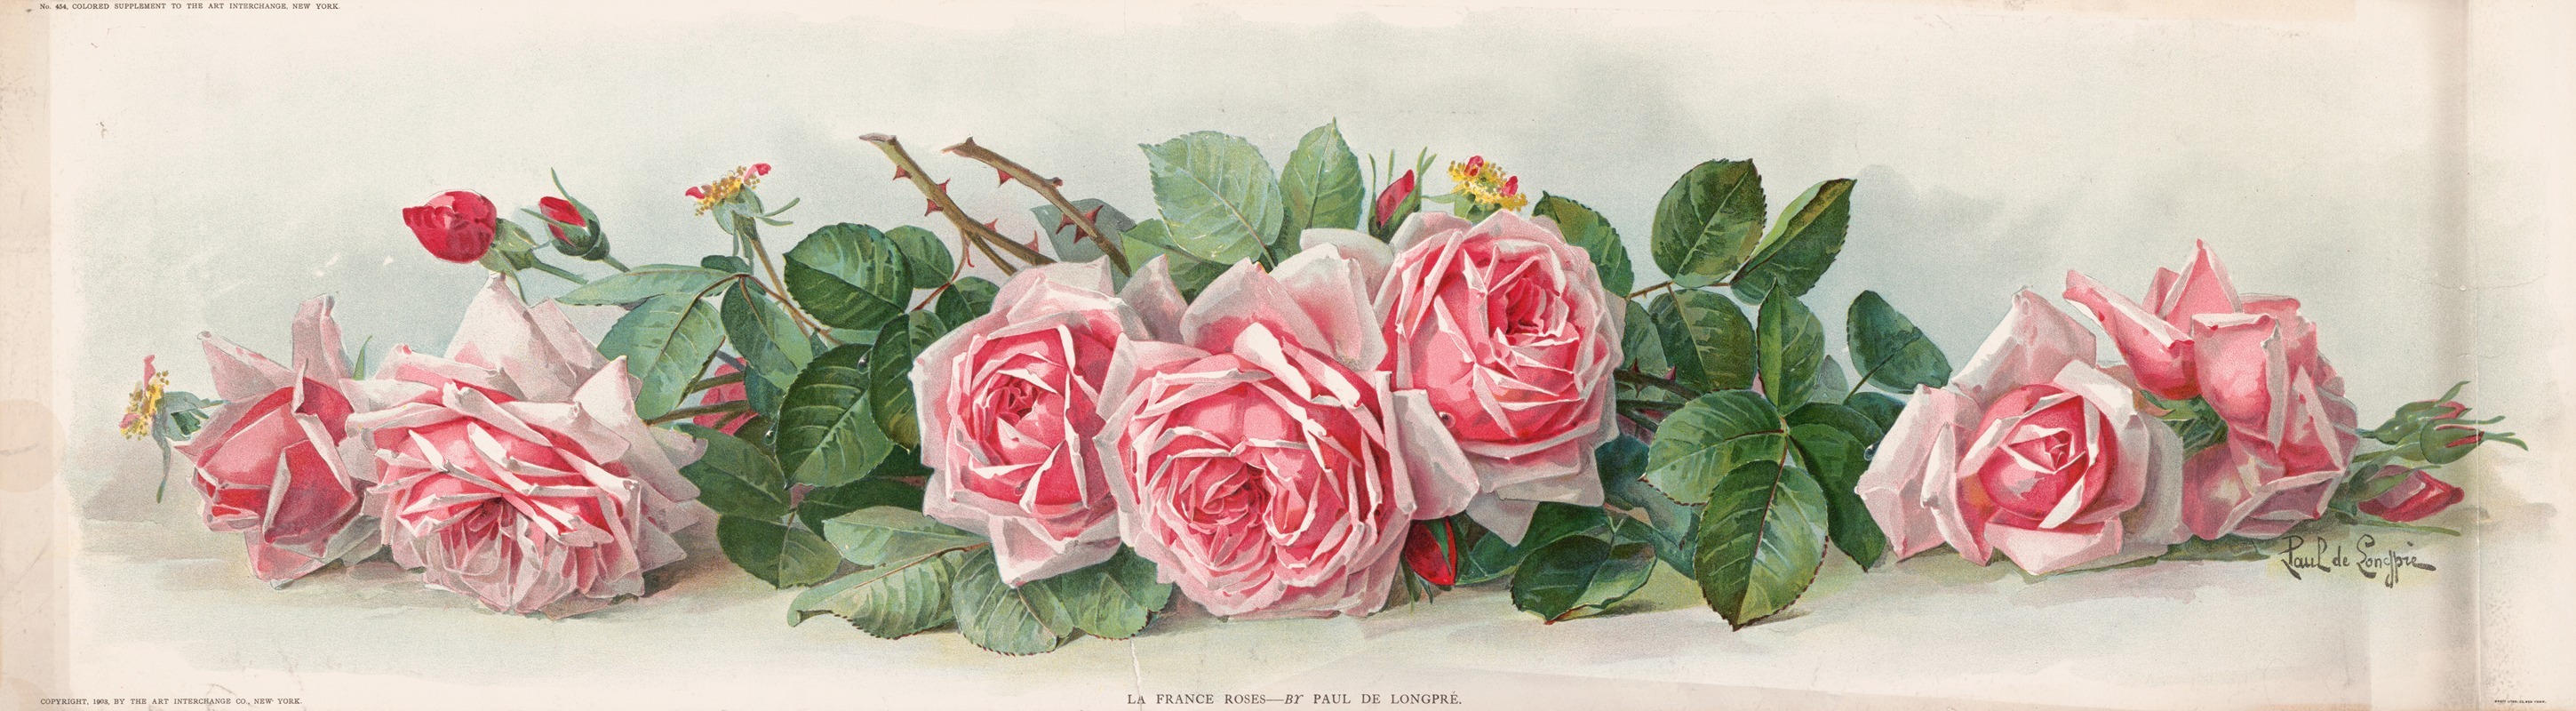 Paul de Longpre - La France roses